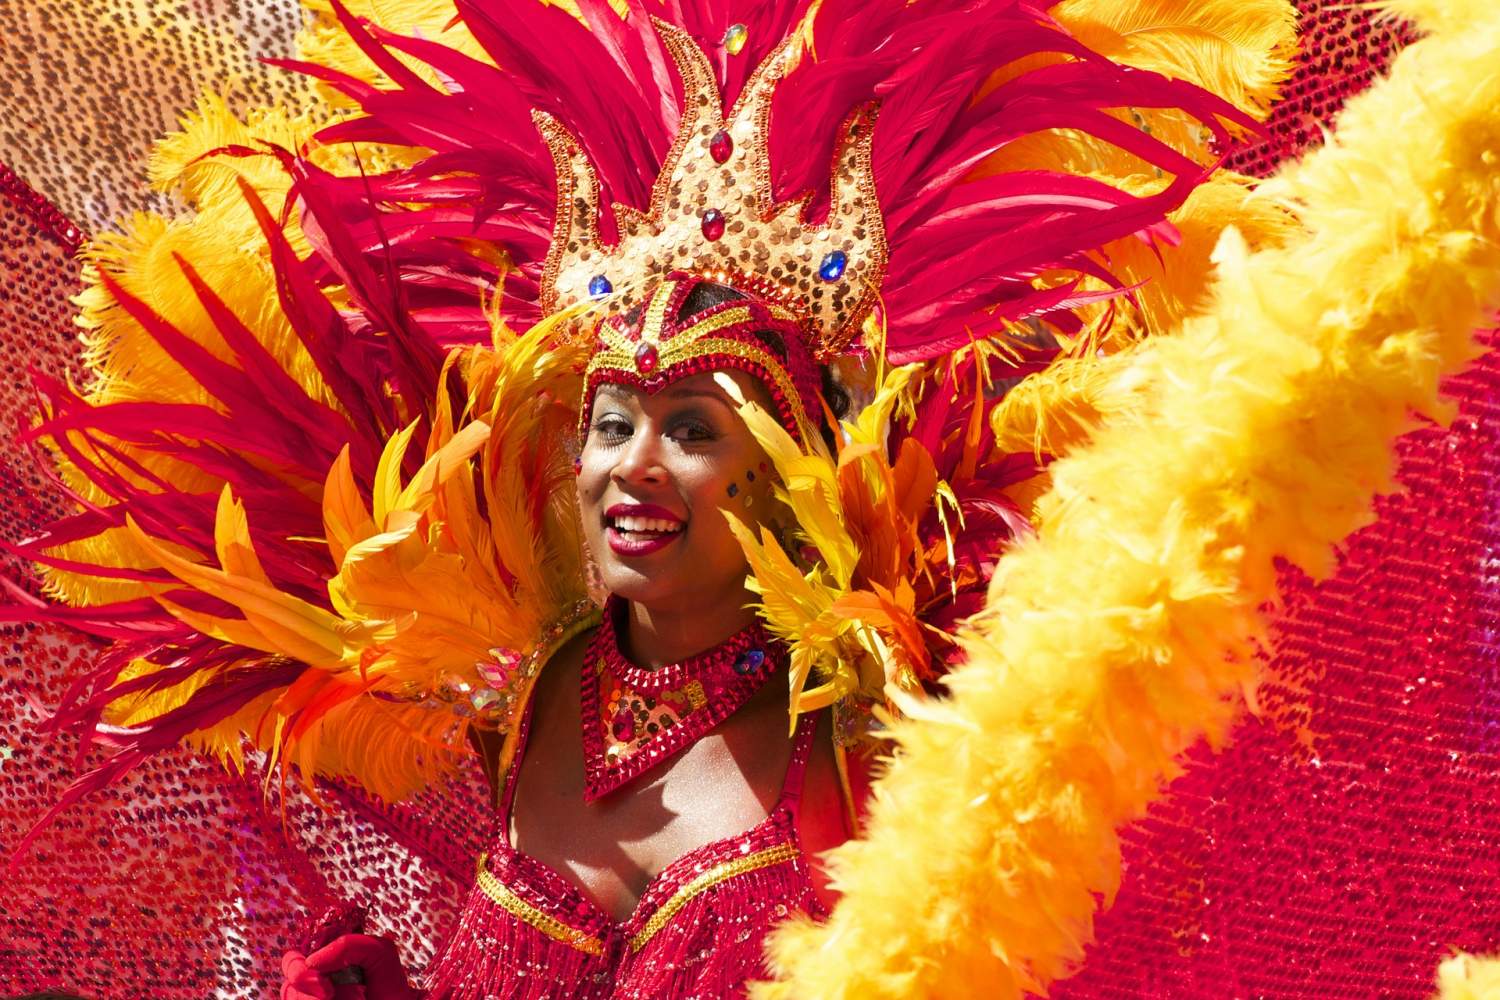 Martinique Carnival - Celebrate the Island's Culture